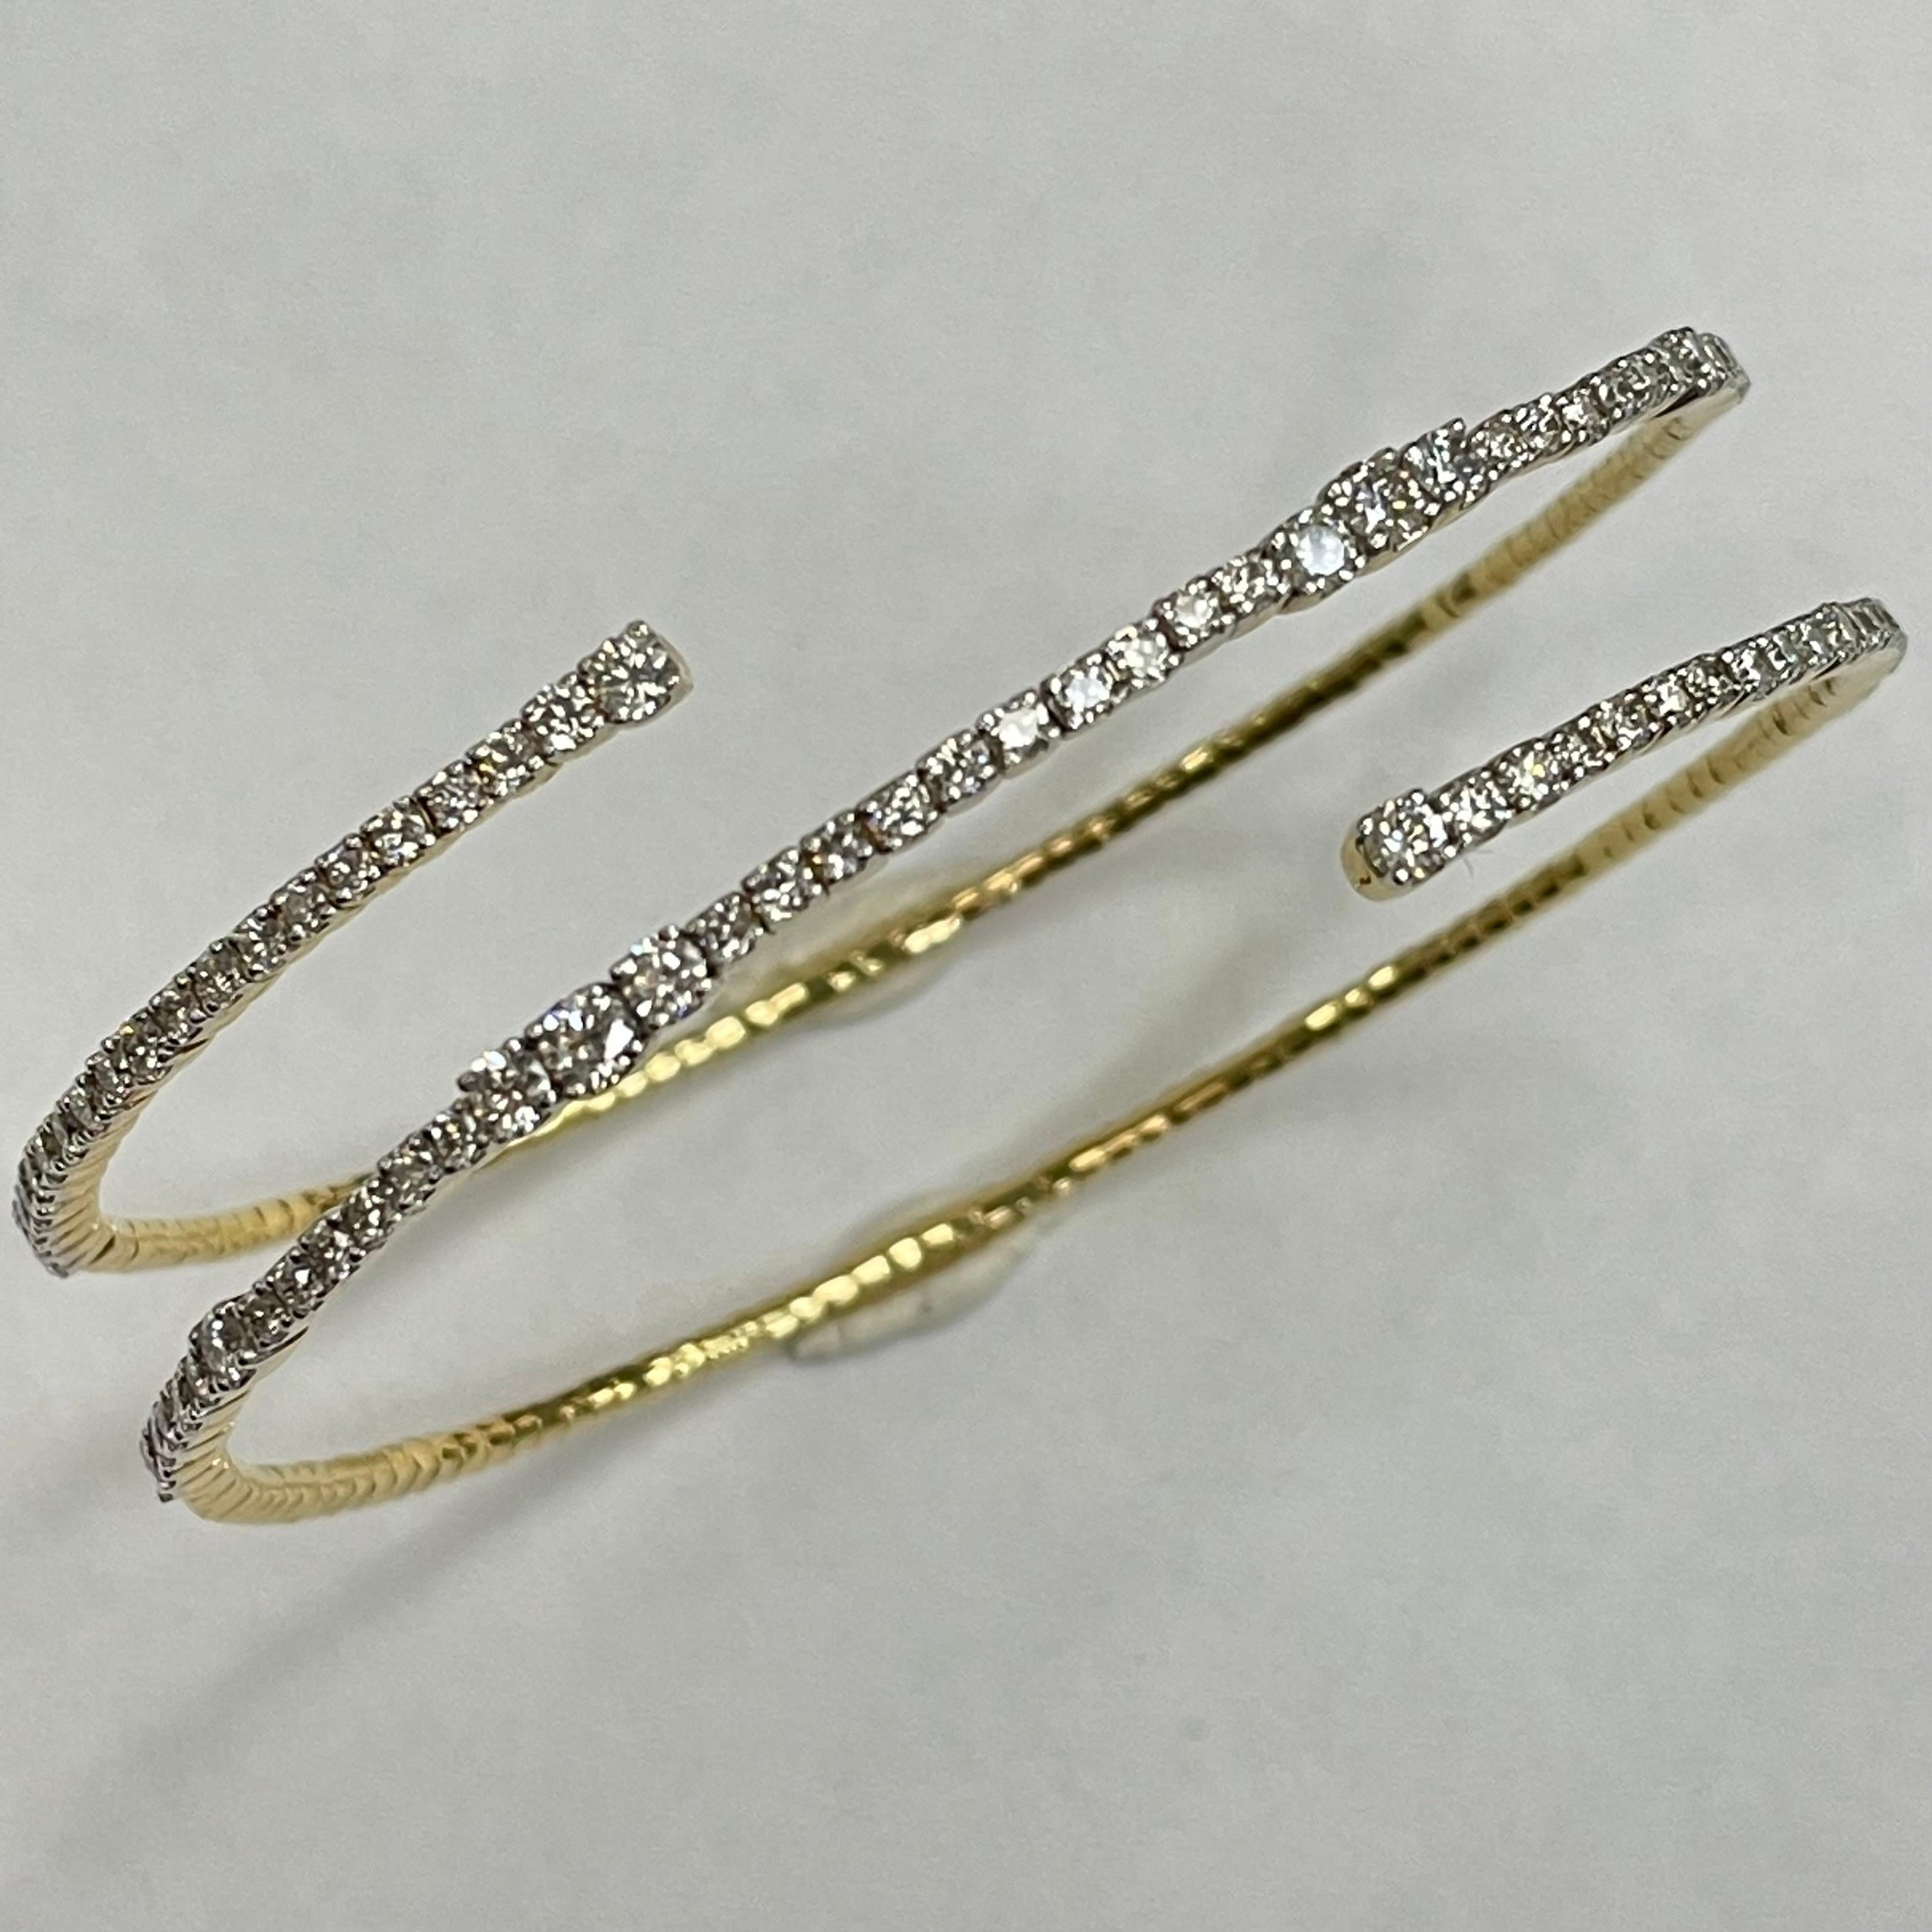 Ce bracelet ouvert en or jaune 18K serti de 84 diamants taille brillant, pesant 2,09 carats. Ce bracelet convient parfaitement aux occasions où vous vous sentez élégante, raffinée et gracieuse.